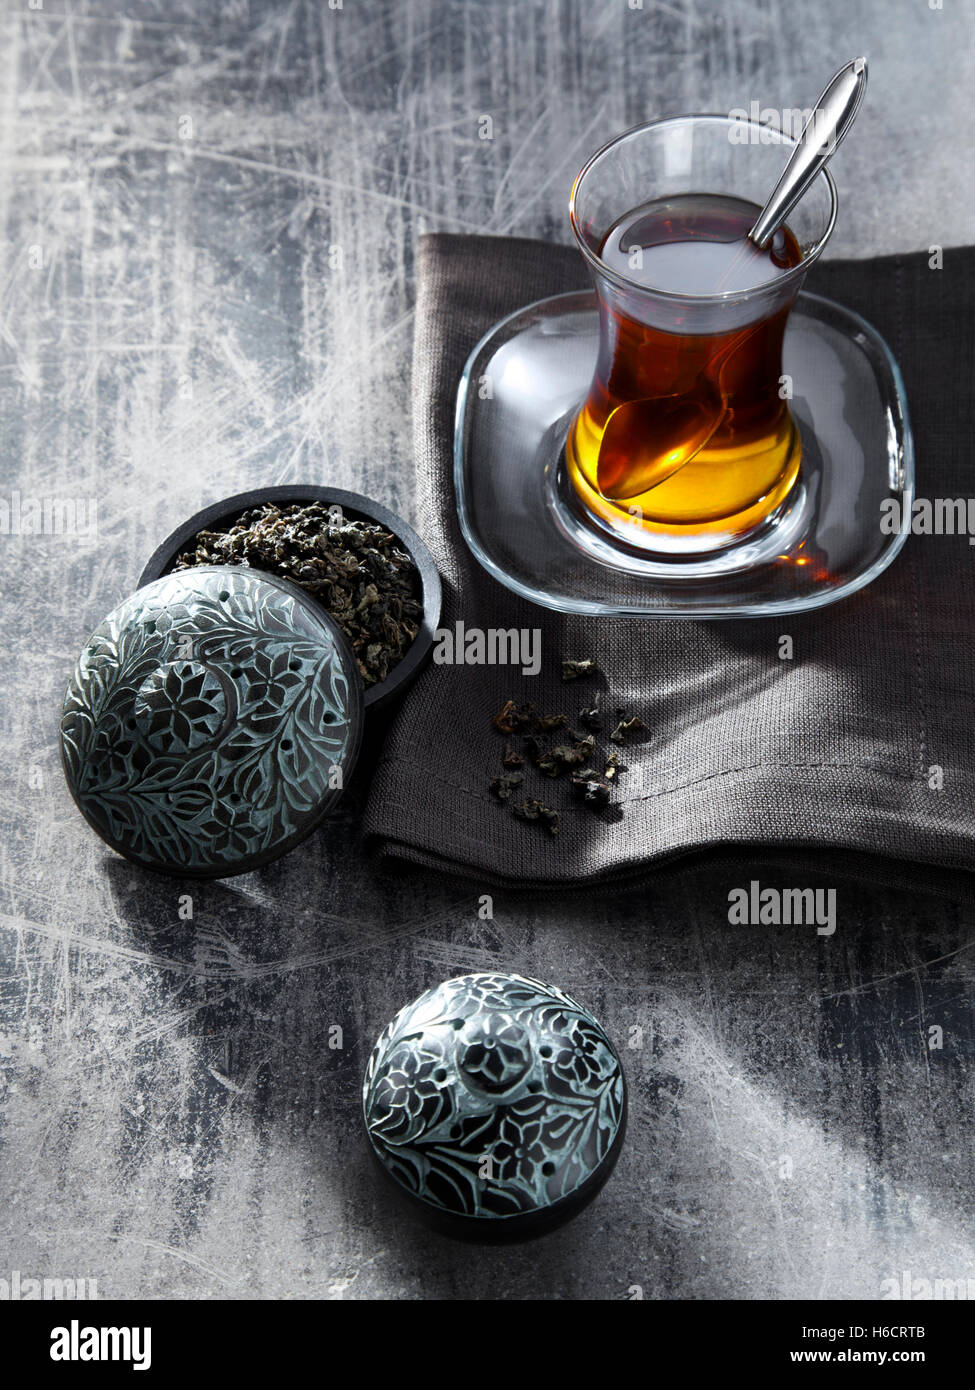 Tee im Glas grau Serviette, Oolong-Tee, heißes Getränk neben kleine Dose mit Tee gefüllt Stockfoto